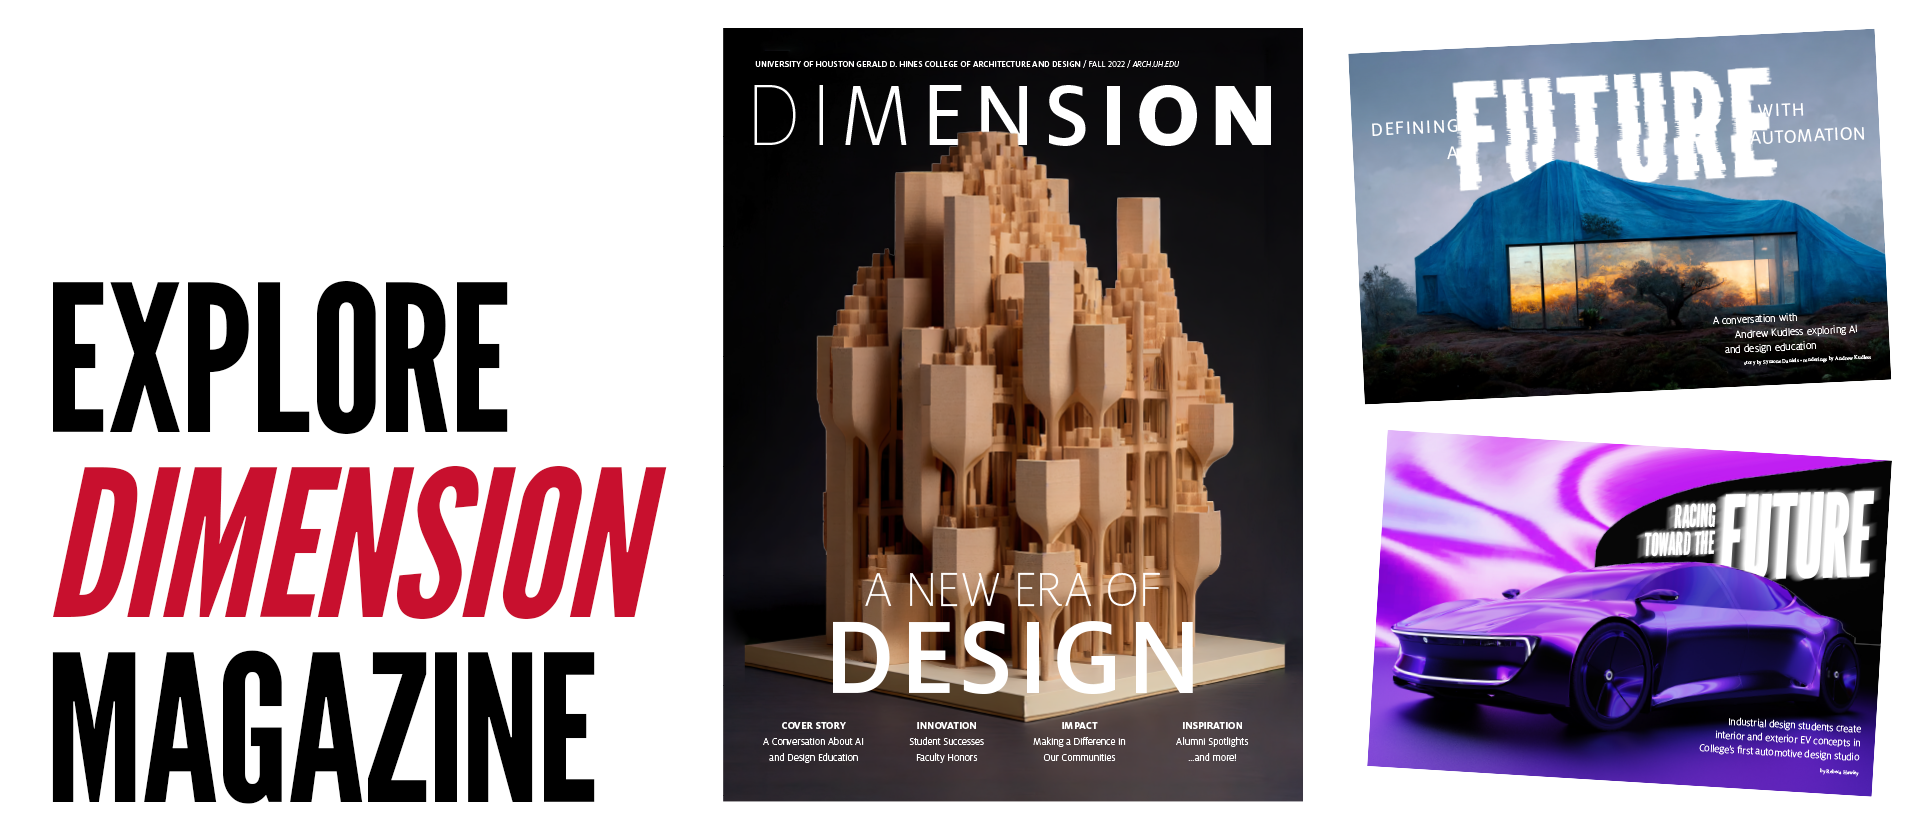 Explore Dimension Magazine